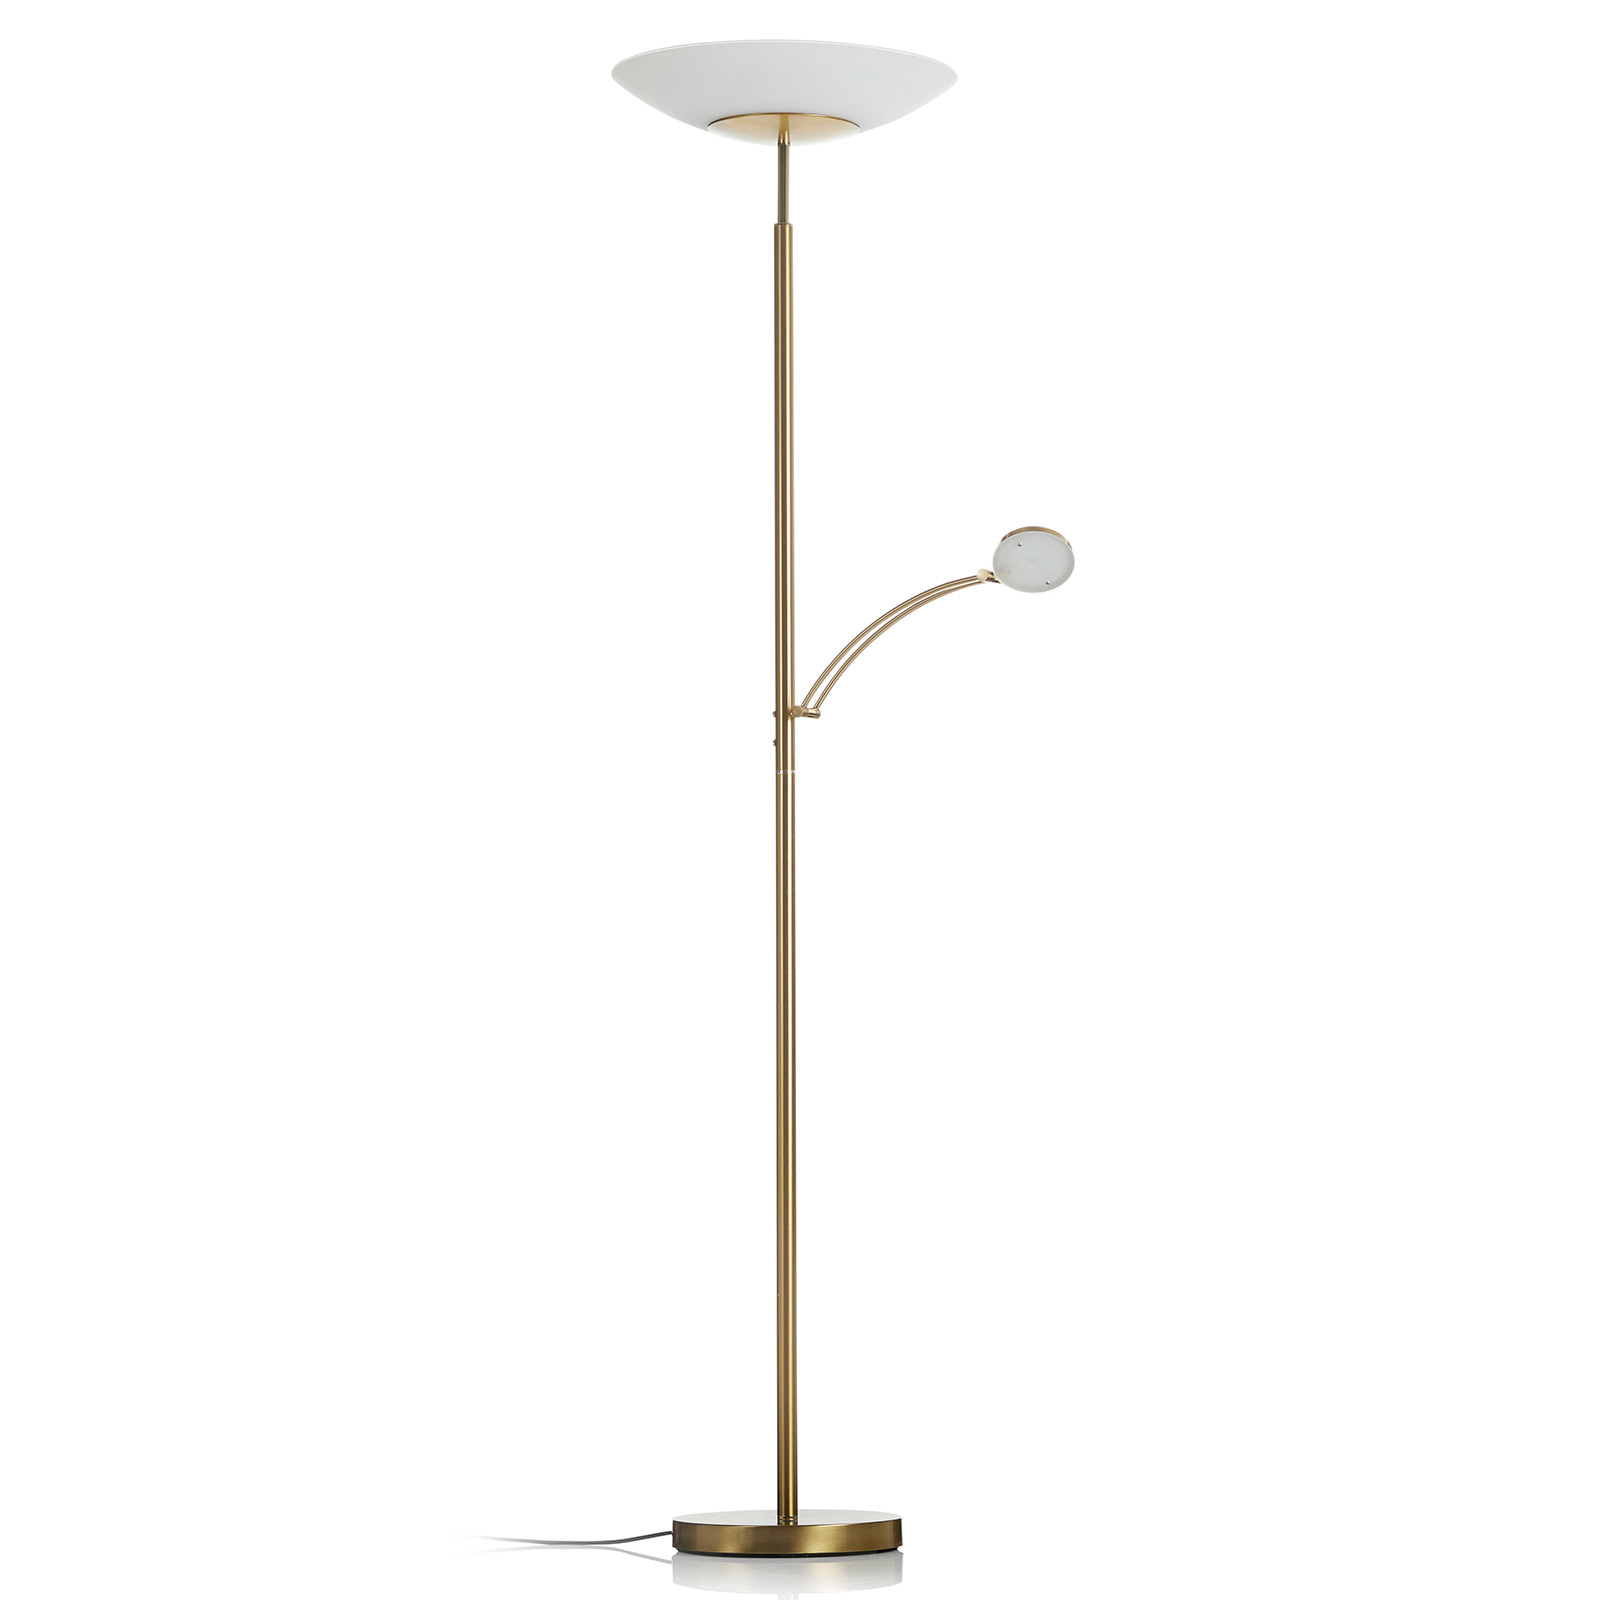 Paul Neuhaus Alfred LED stojací lampa, mosaz